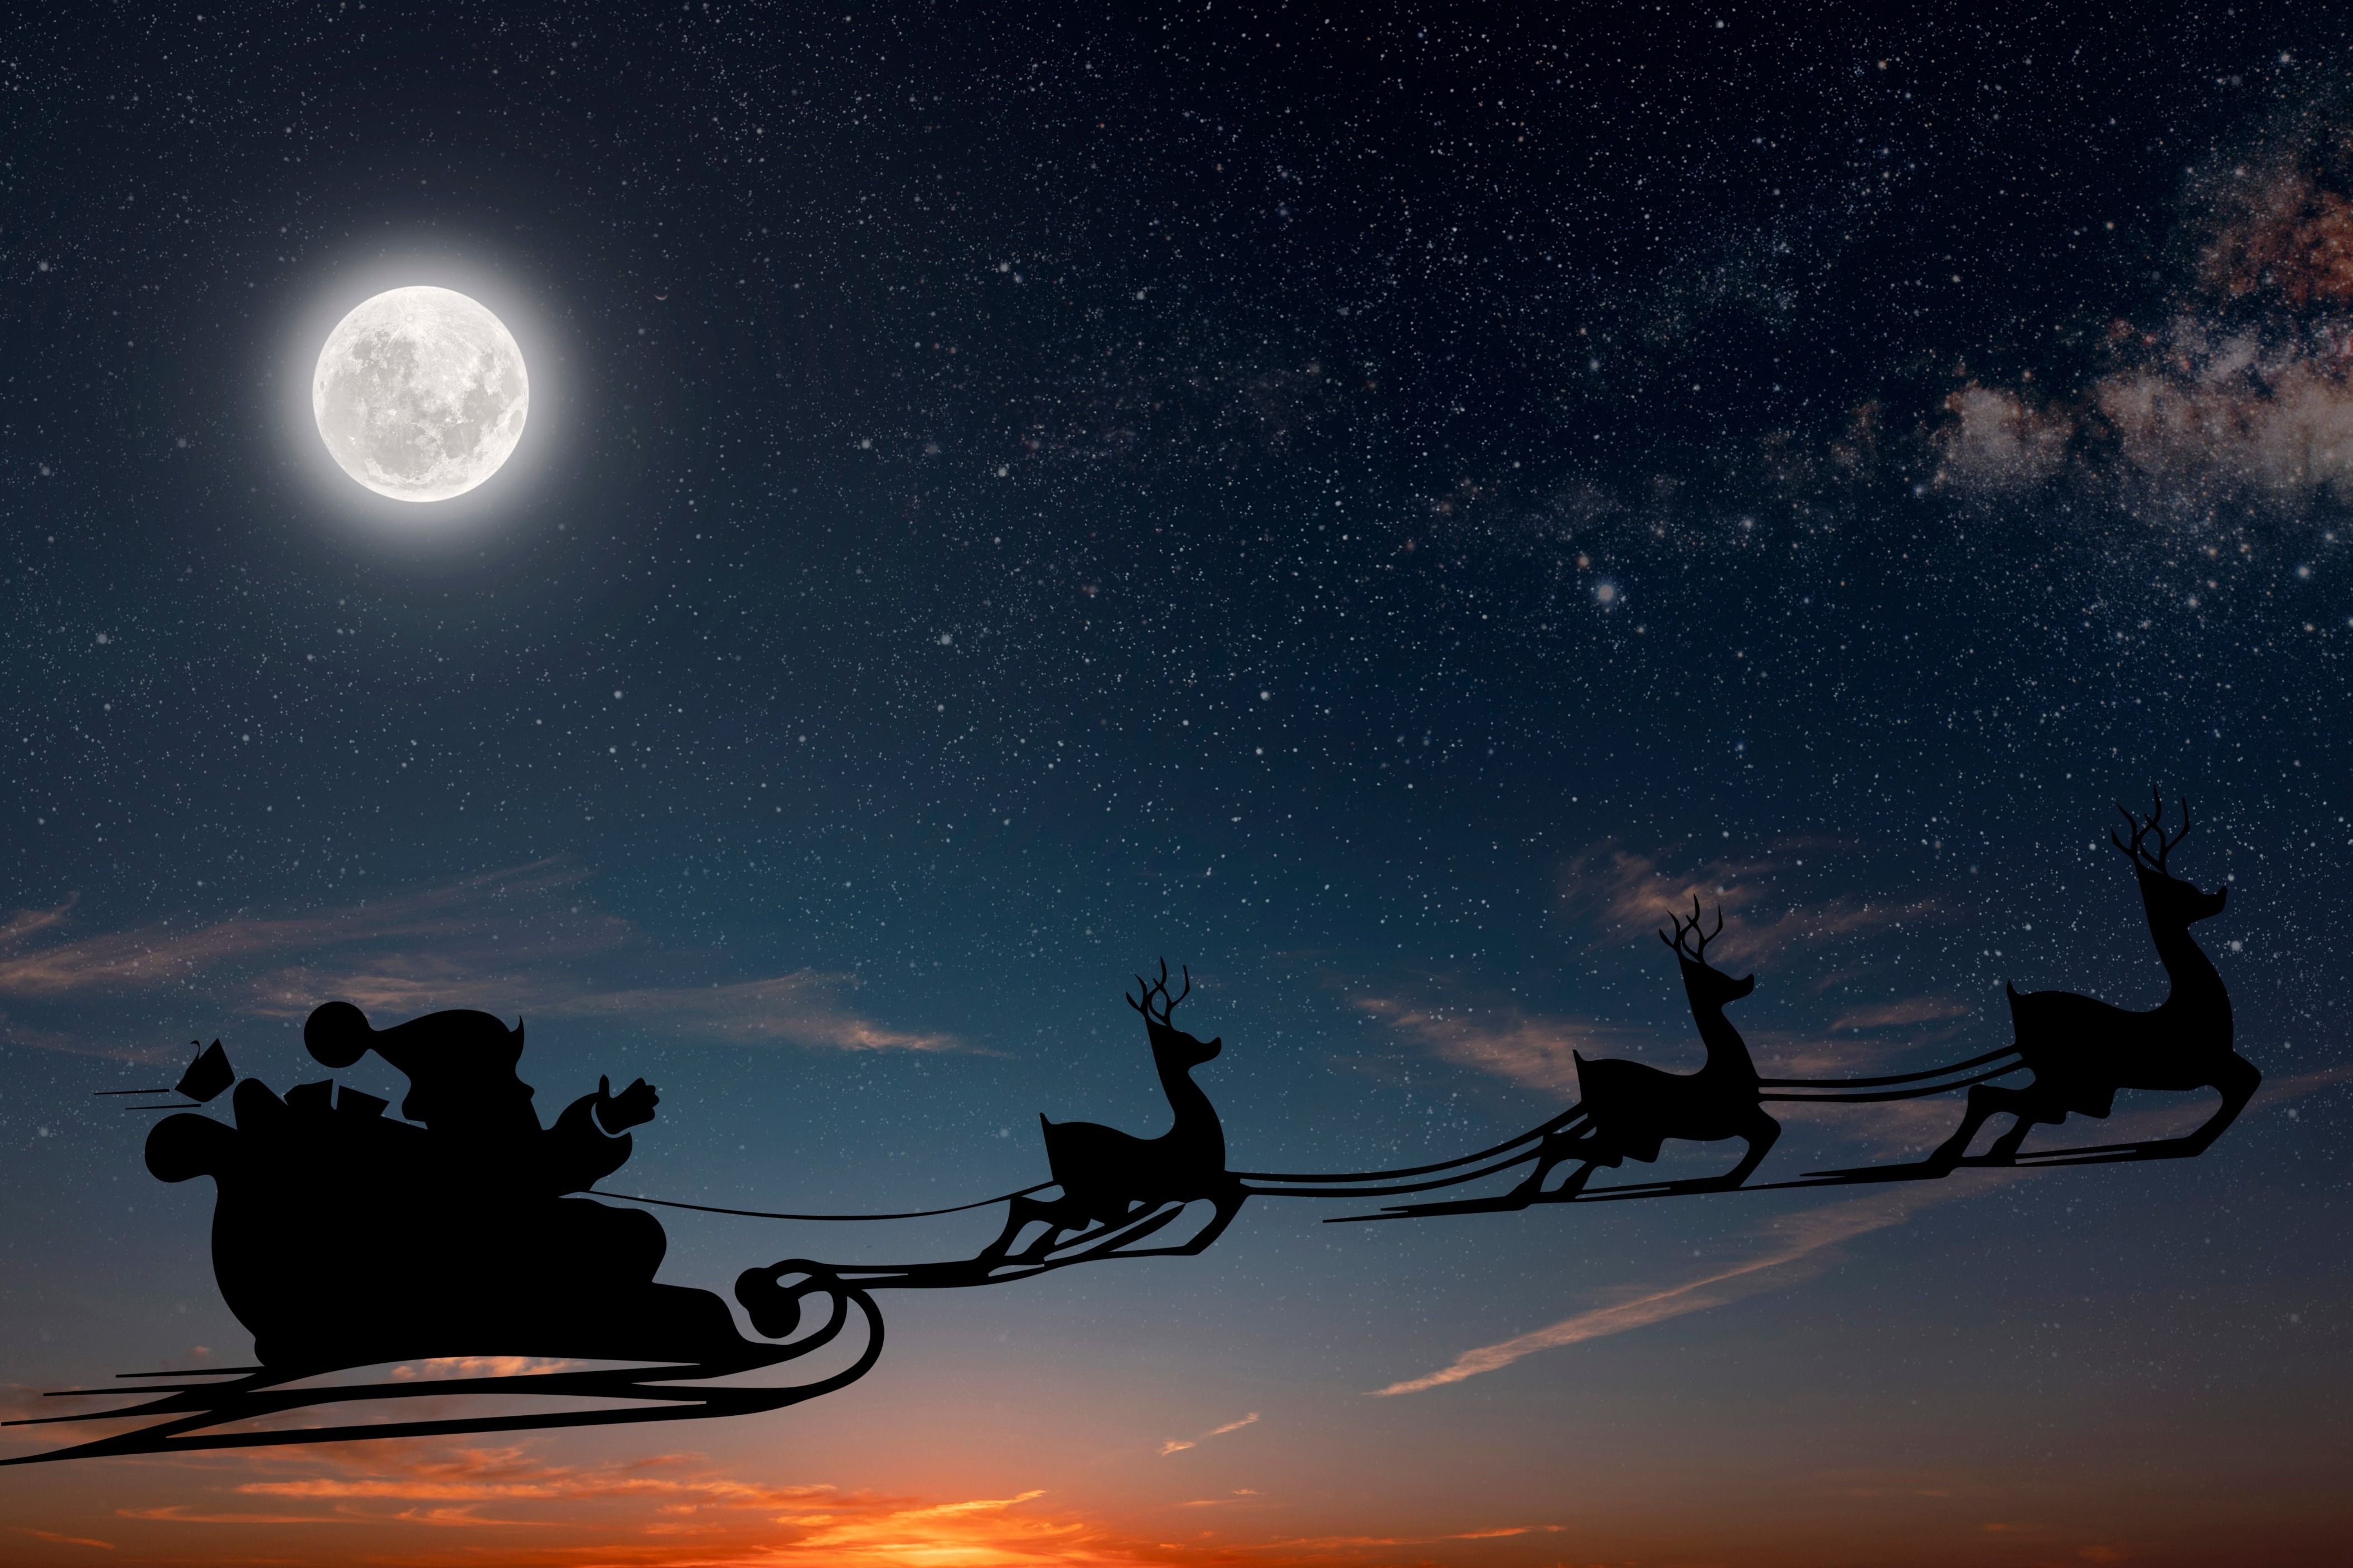 Flying reindeer